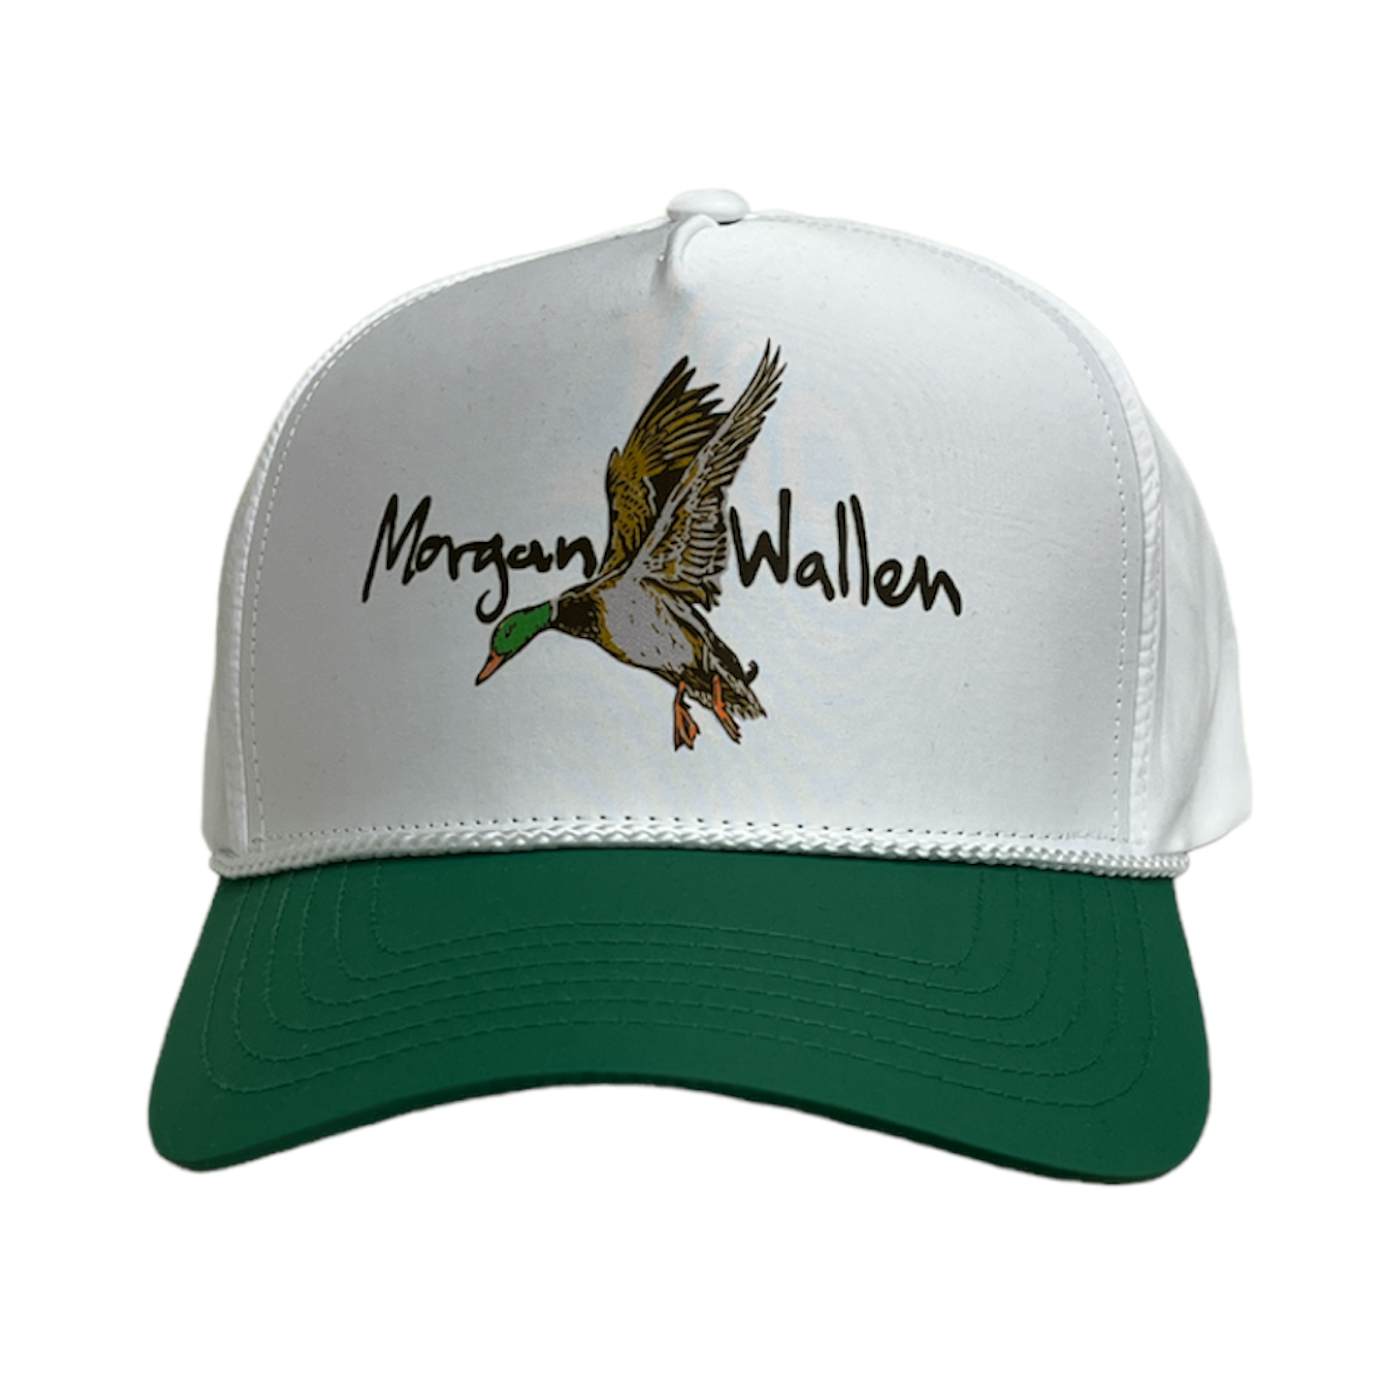 Morgan Wallen Duck Rope Hat